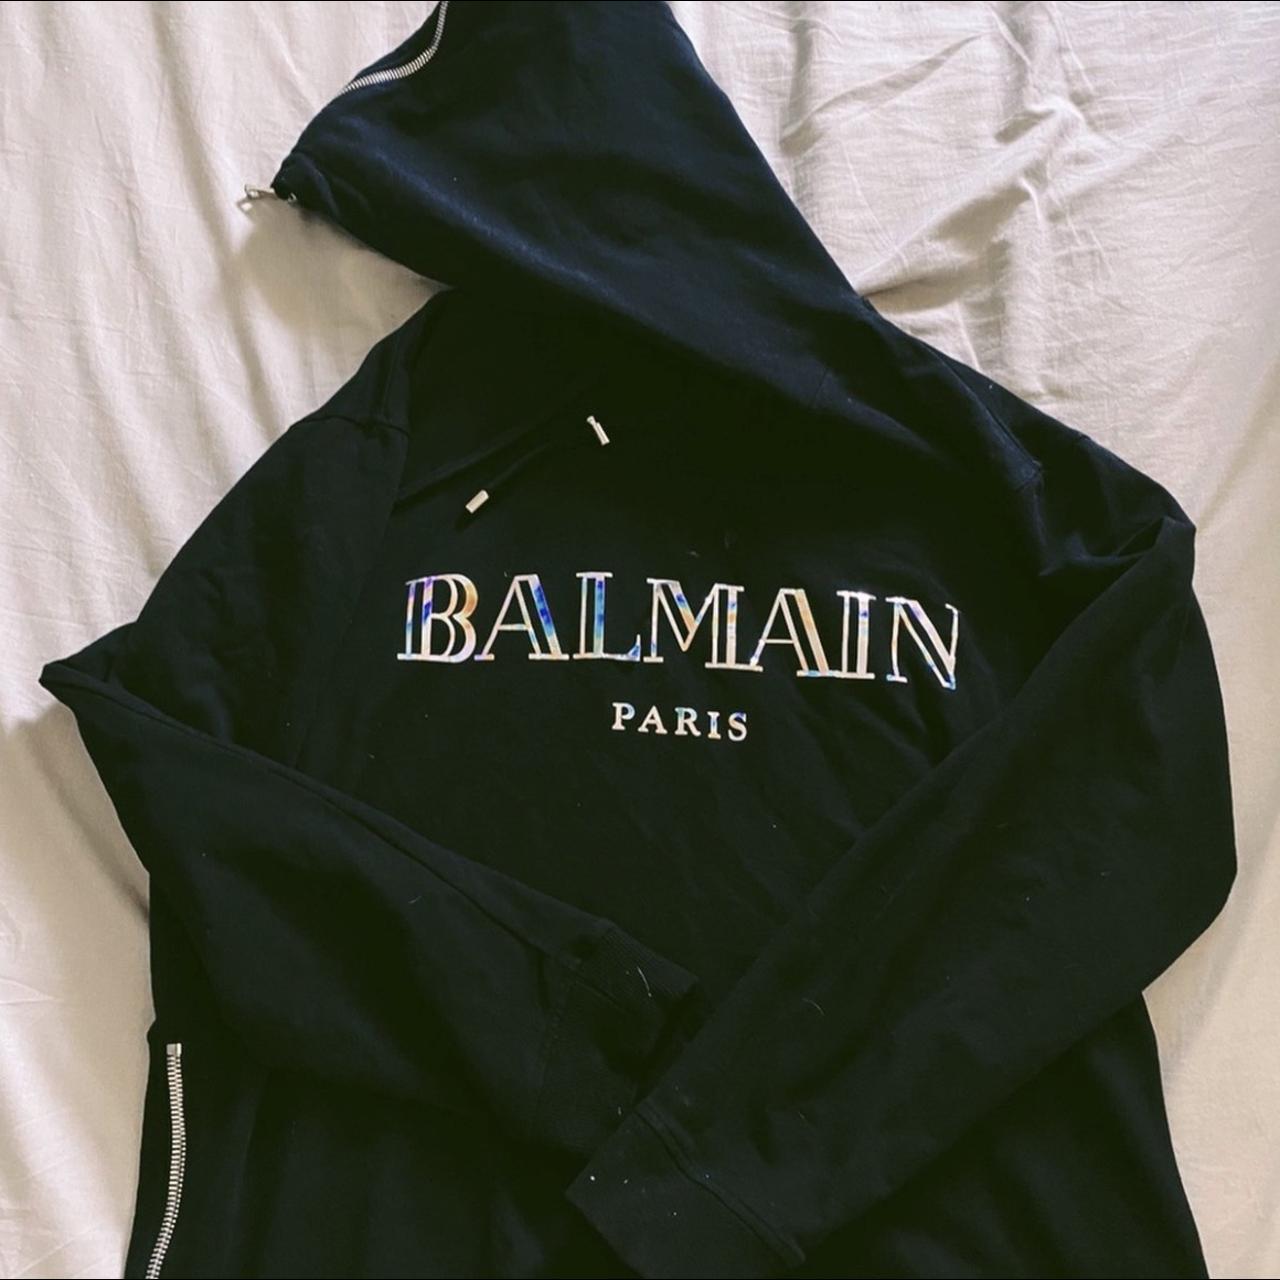 Balmain Paris hoodie Size Xl Metallic writing... - Depop